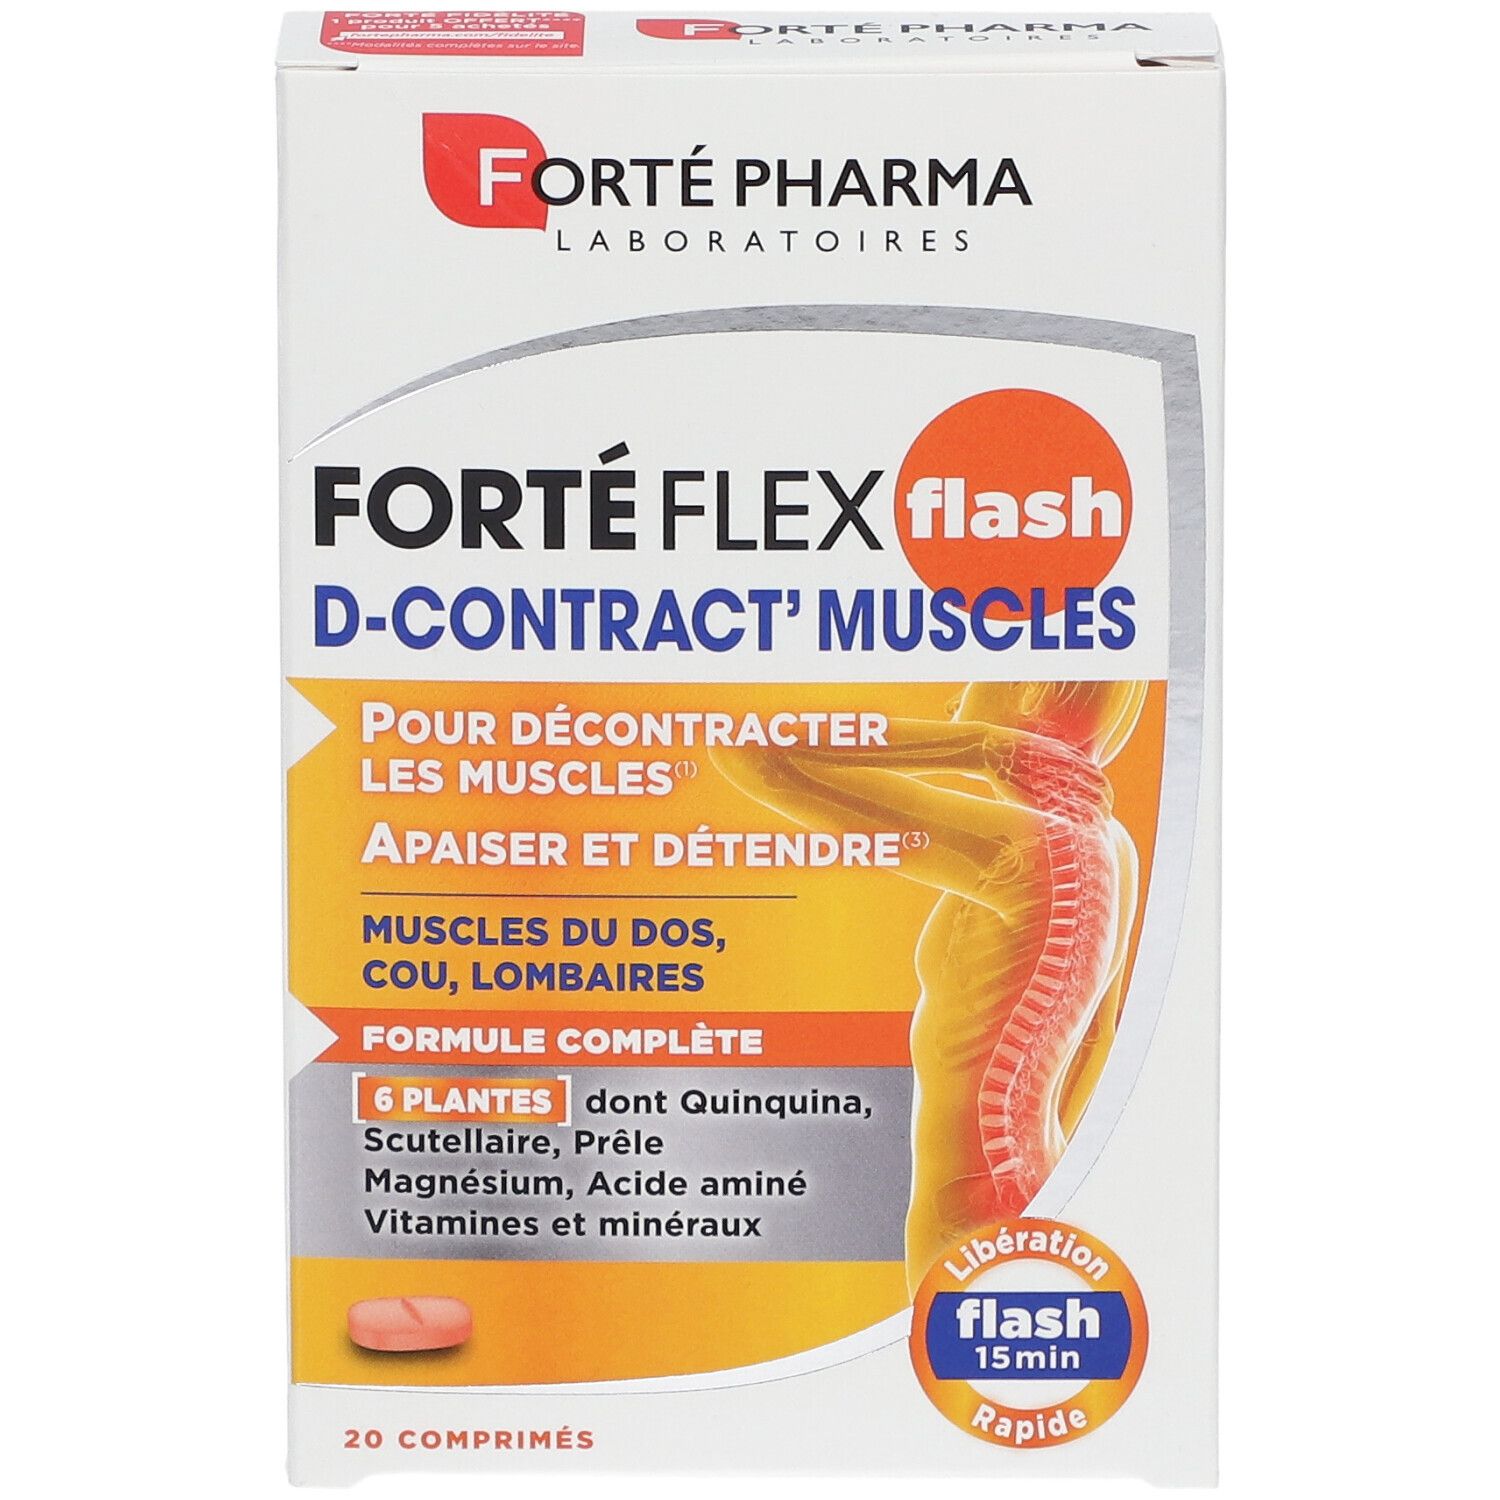 Forté Pharma Forté Flex Flash D-Contract' Muscles